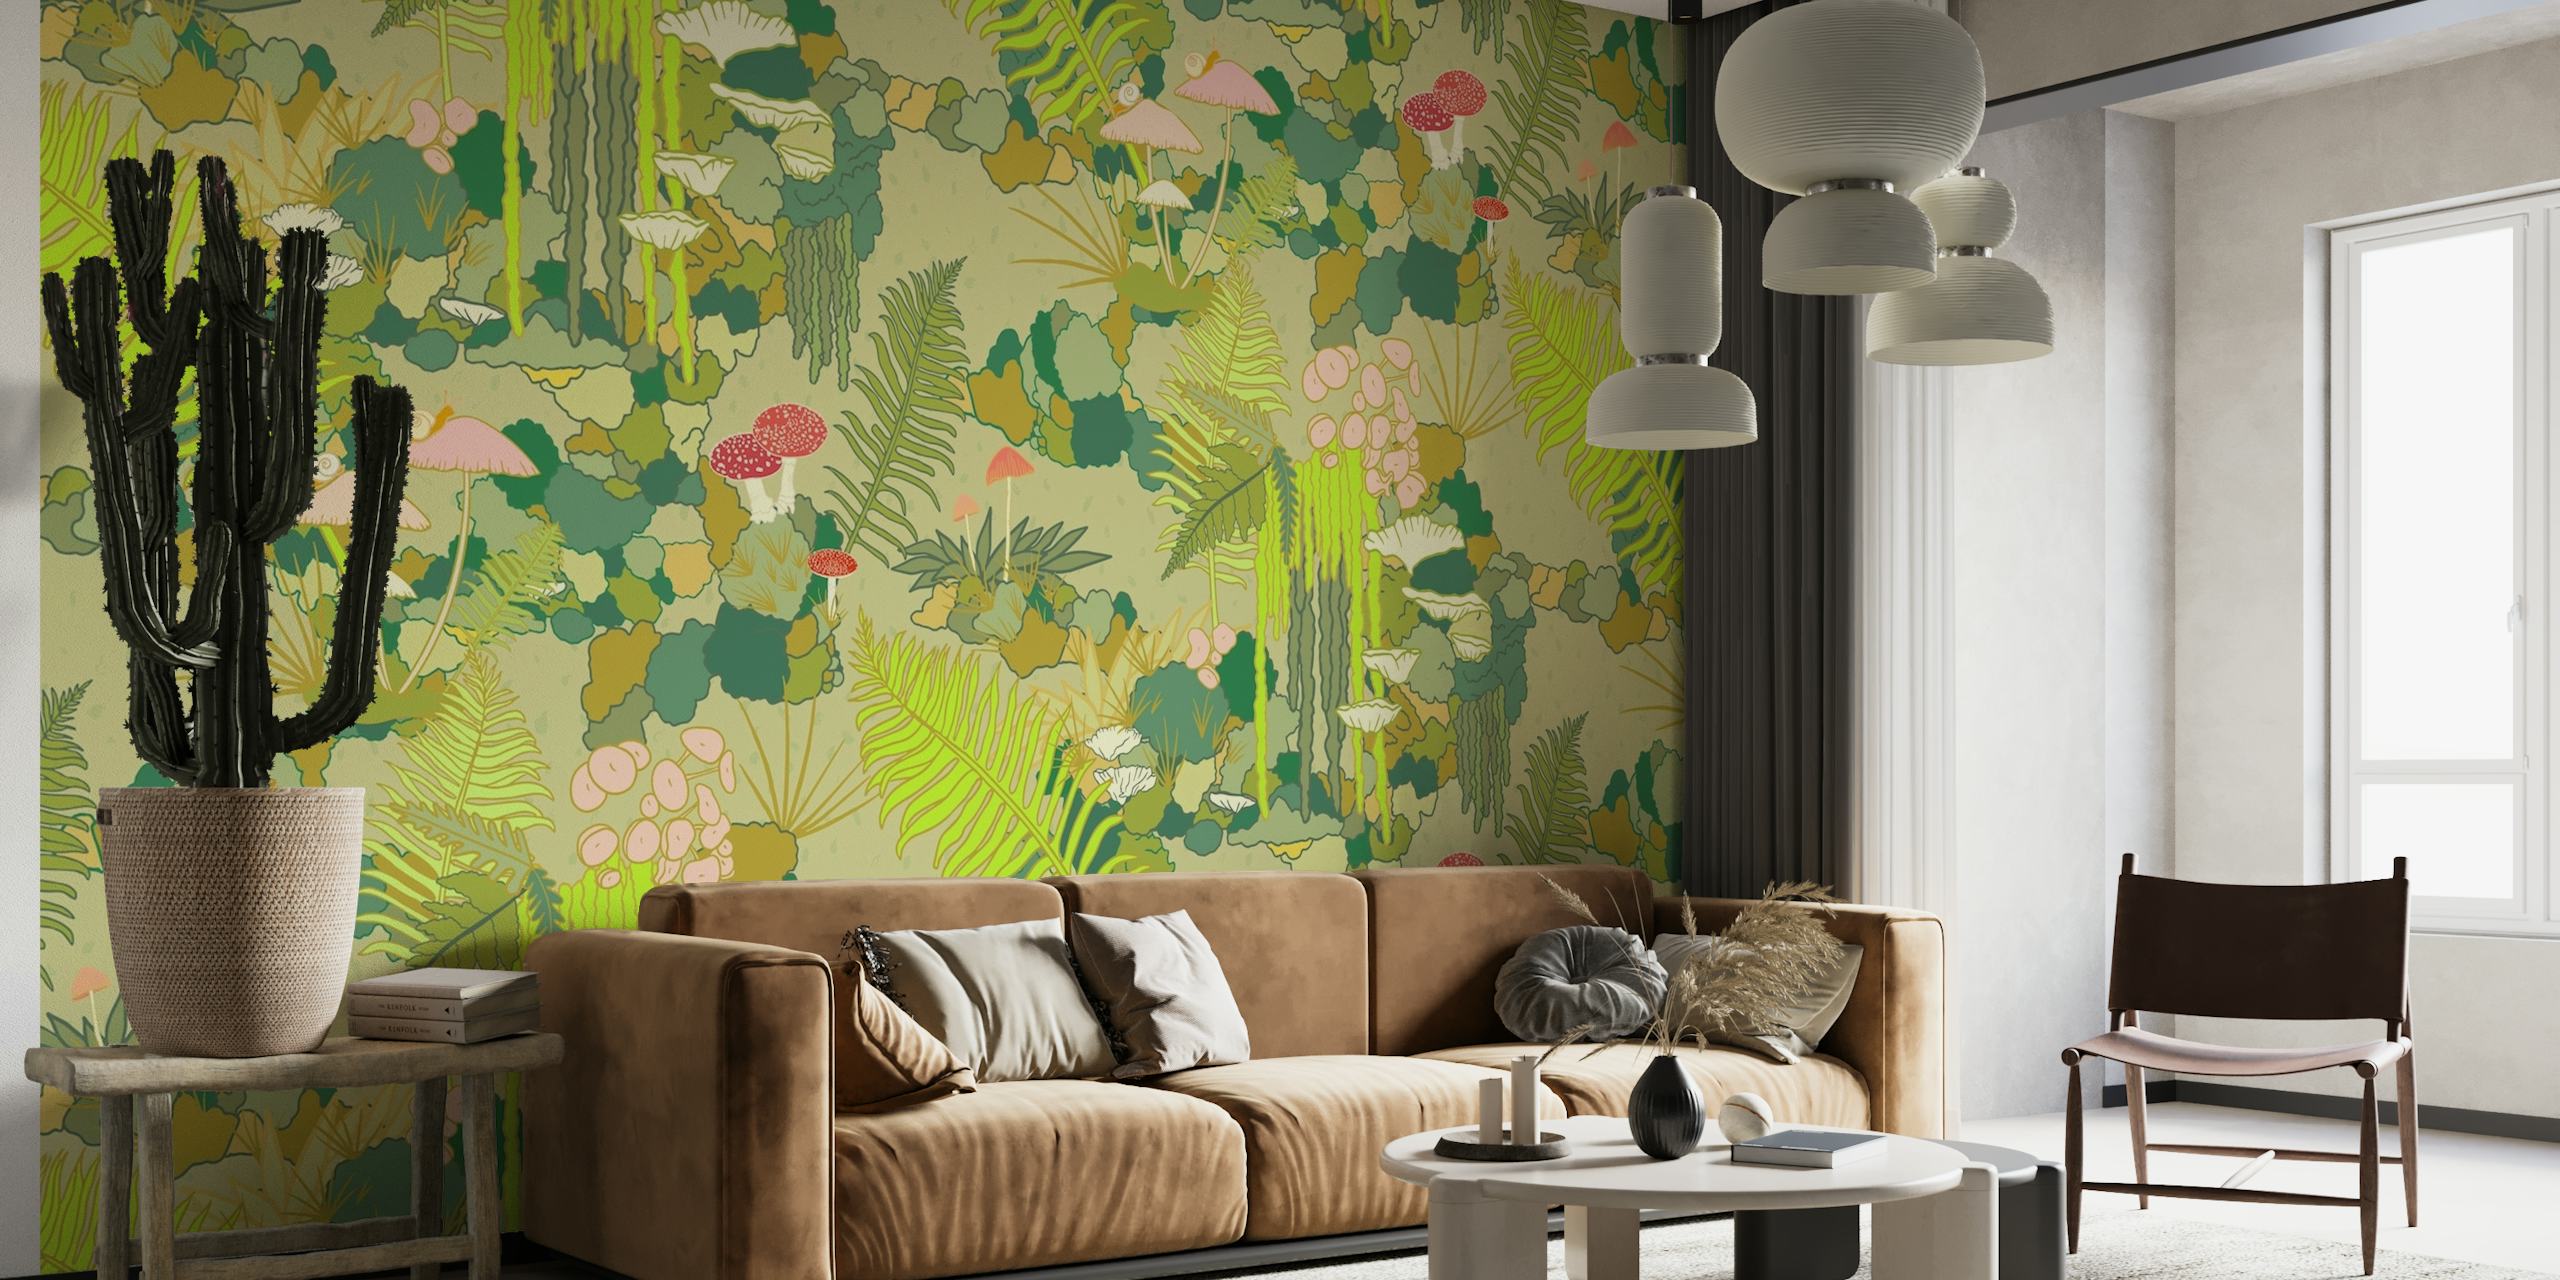 Mossy Forest Floor -seinämaalaus, jossa on runsaasti lehtikuvioita ja sieniä